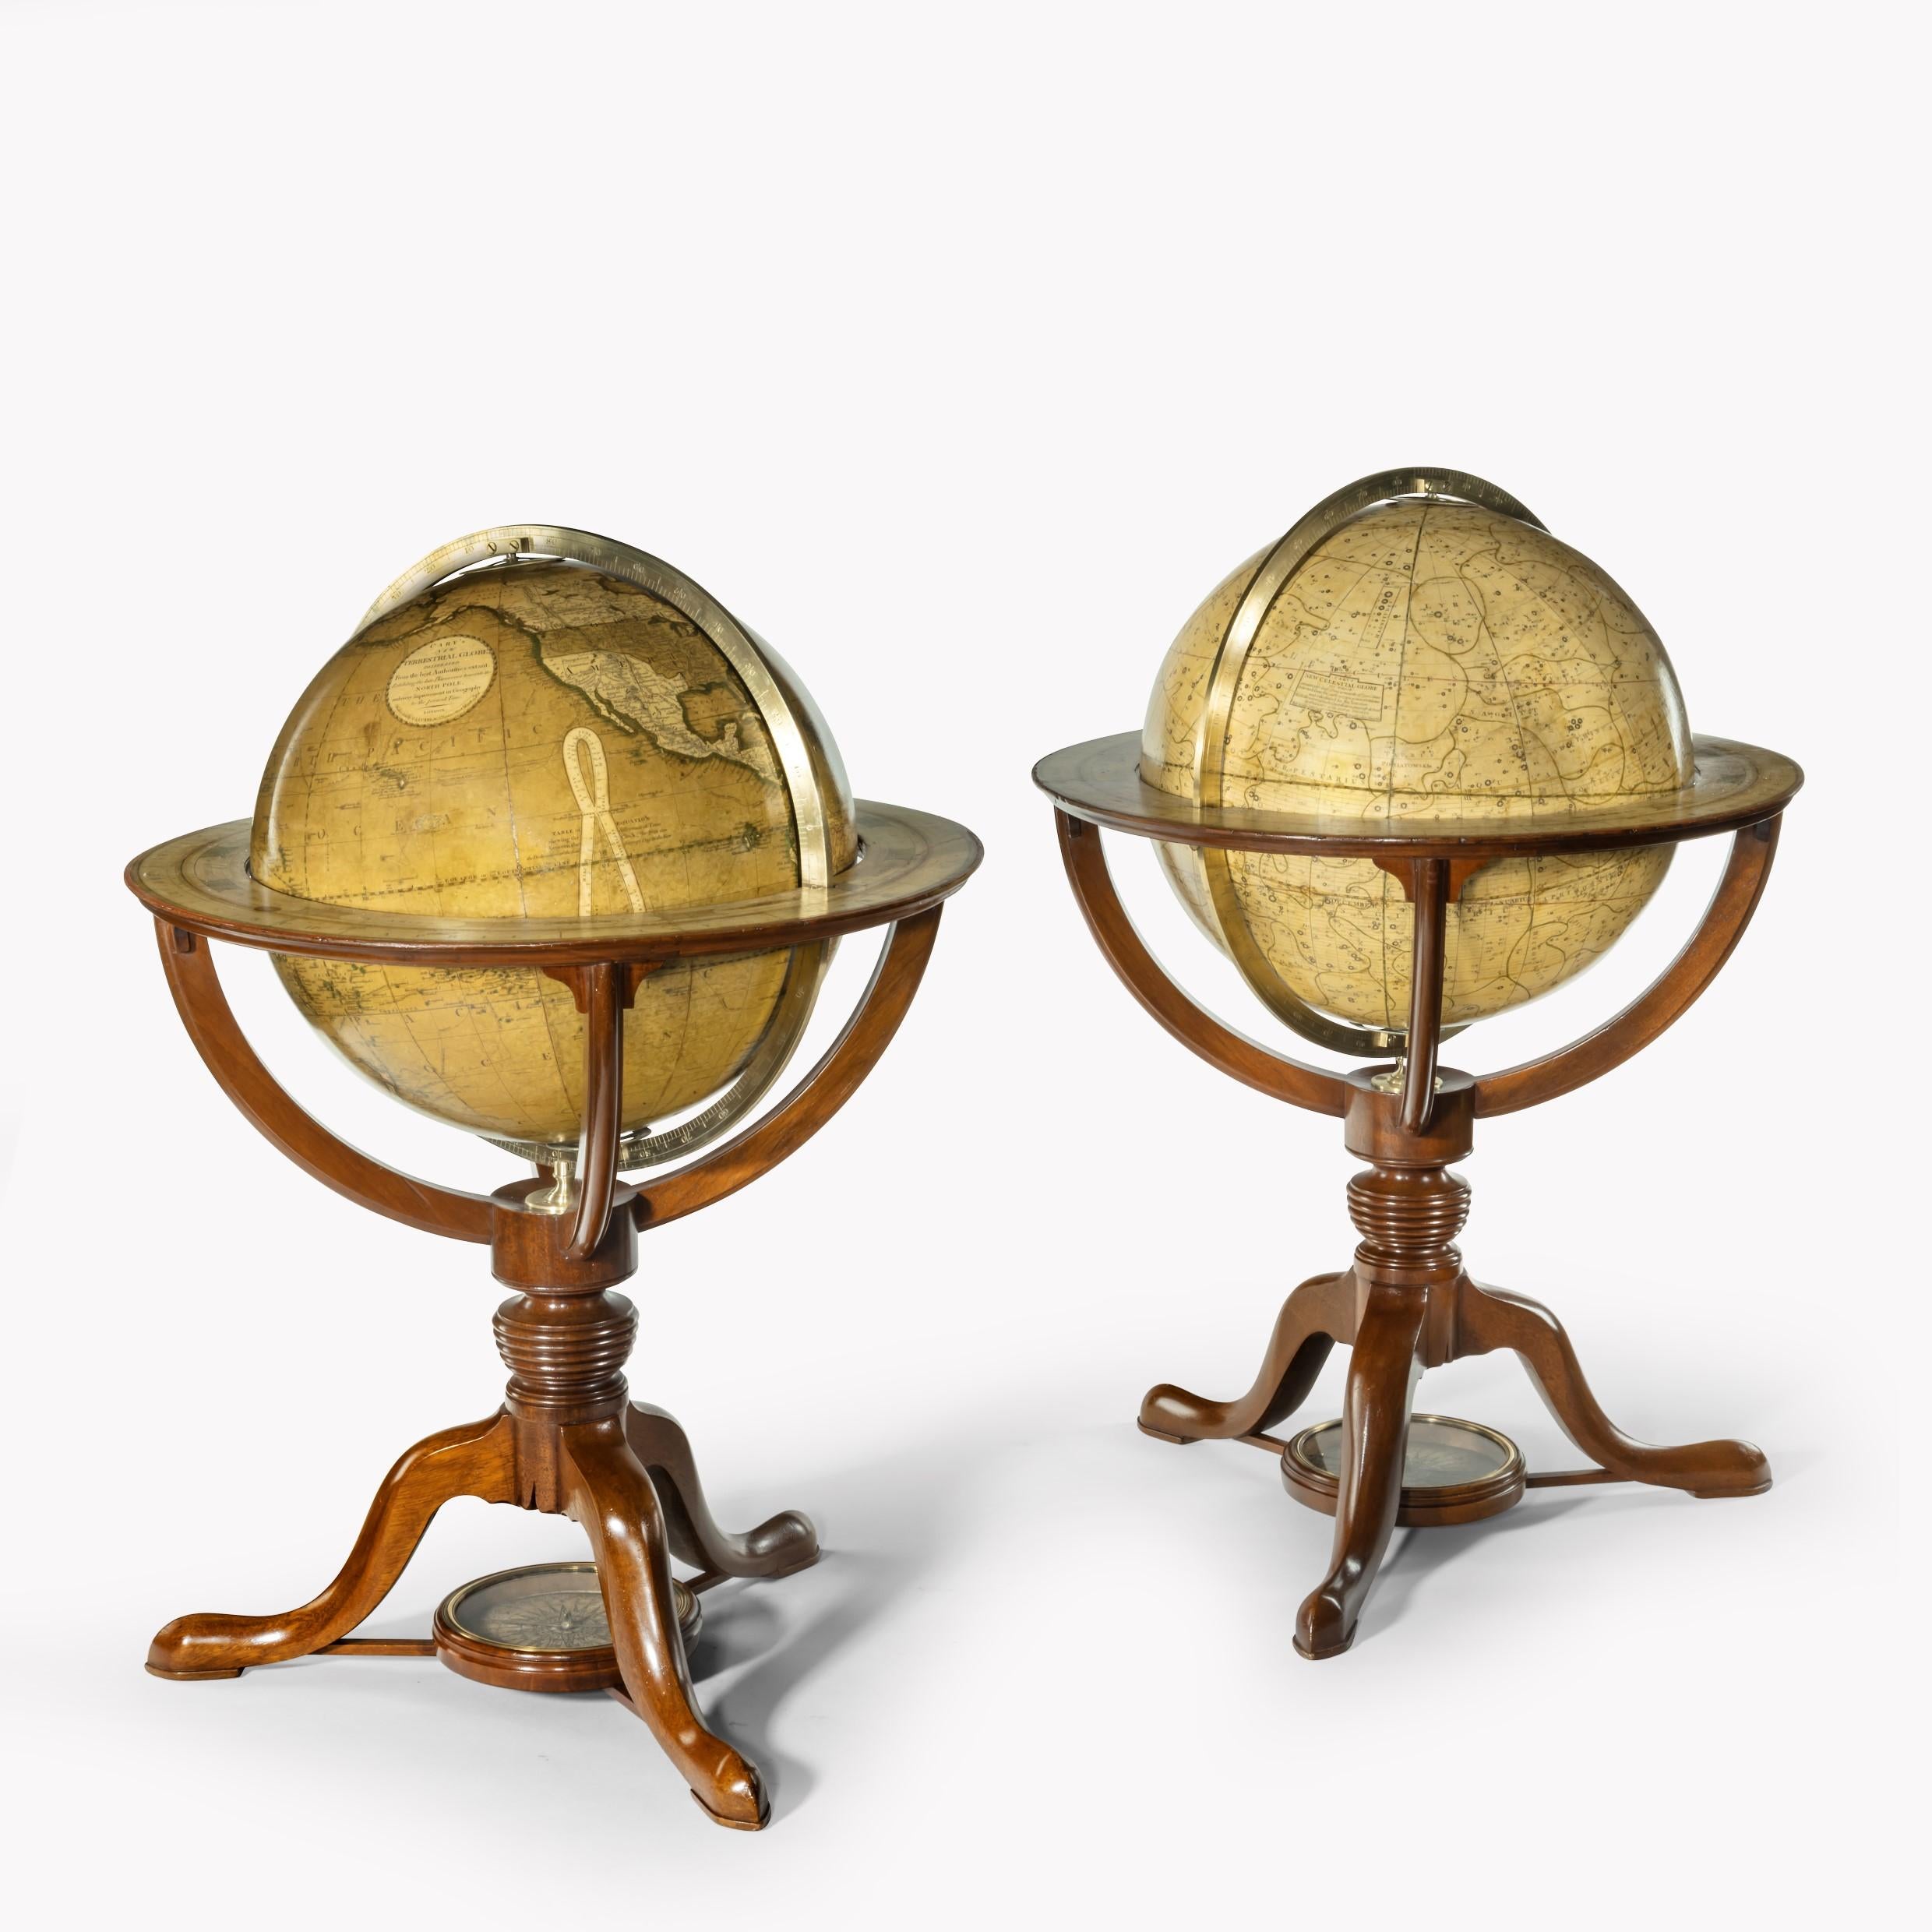 Une paire de globes de table de 12 pouces par G & J Cary, datés de 1800 et 1821, chacun avec des gores peints à la main, placés dans des supports en acajou avec un support tourné reposant sur trois pieds centrés sur les roses de la compagnie.